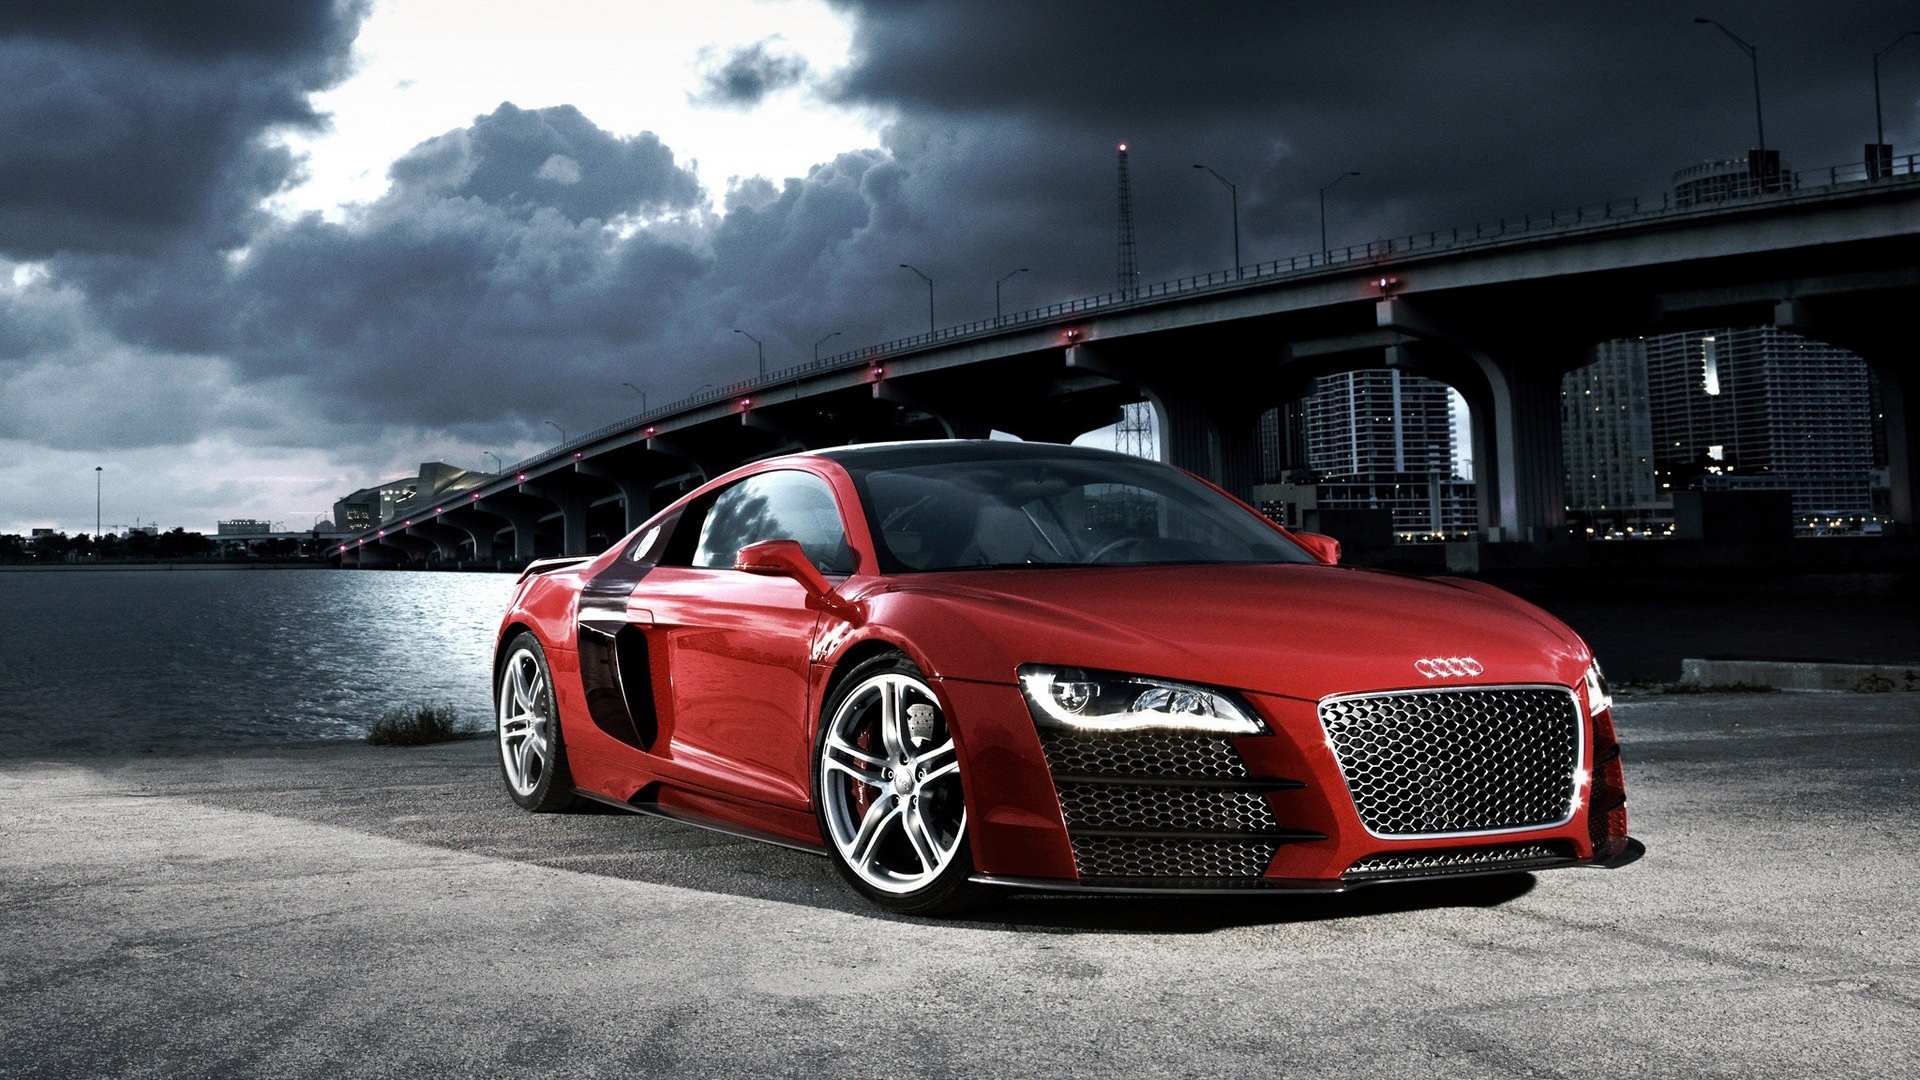 Audi Car Images Hd Download In Wallpaper